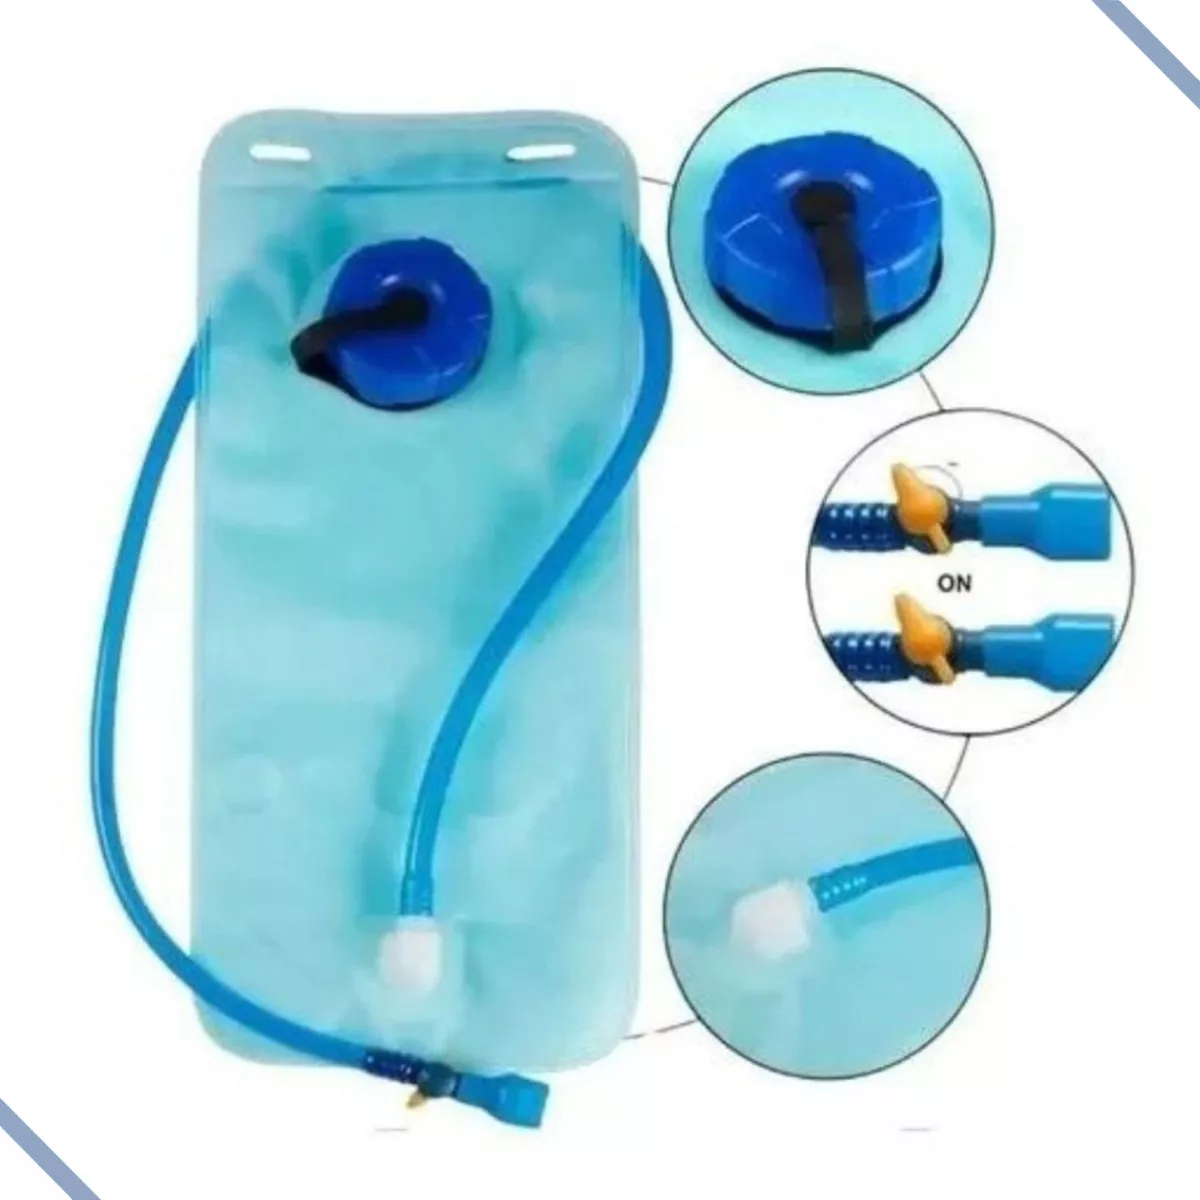 Primeira imagem para pesquisa de refil para mochila de hidratacao